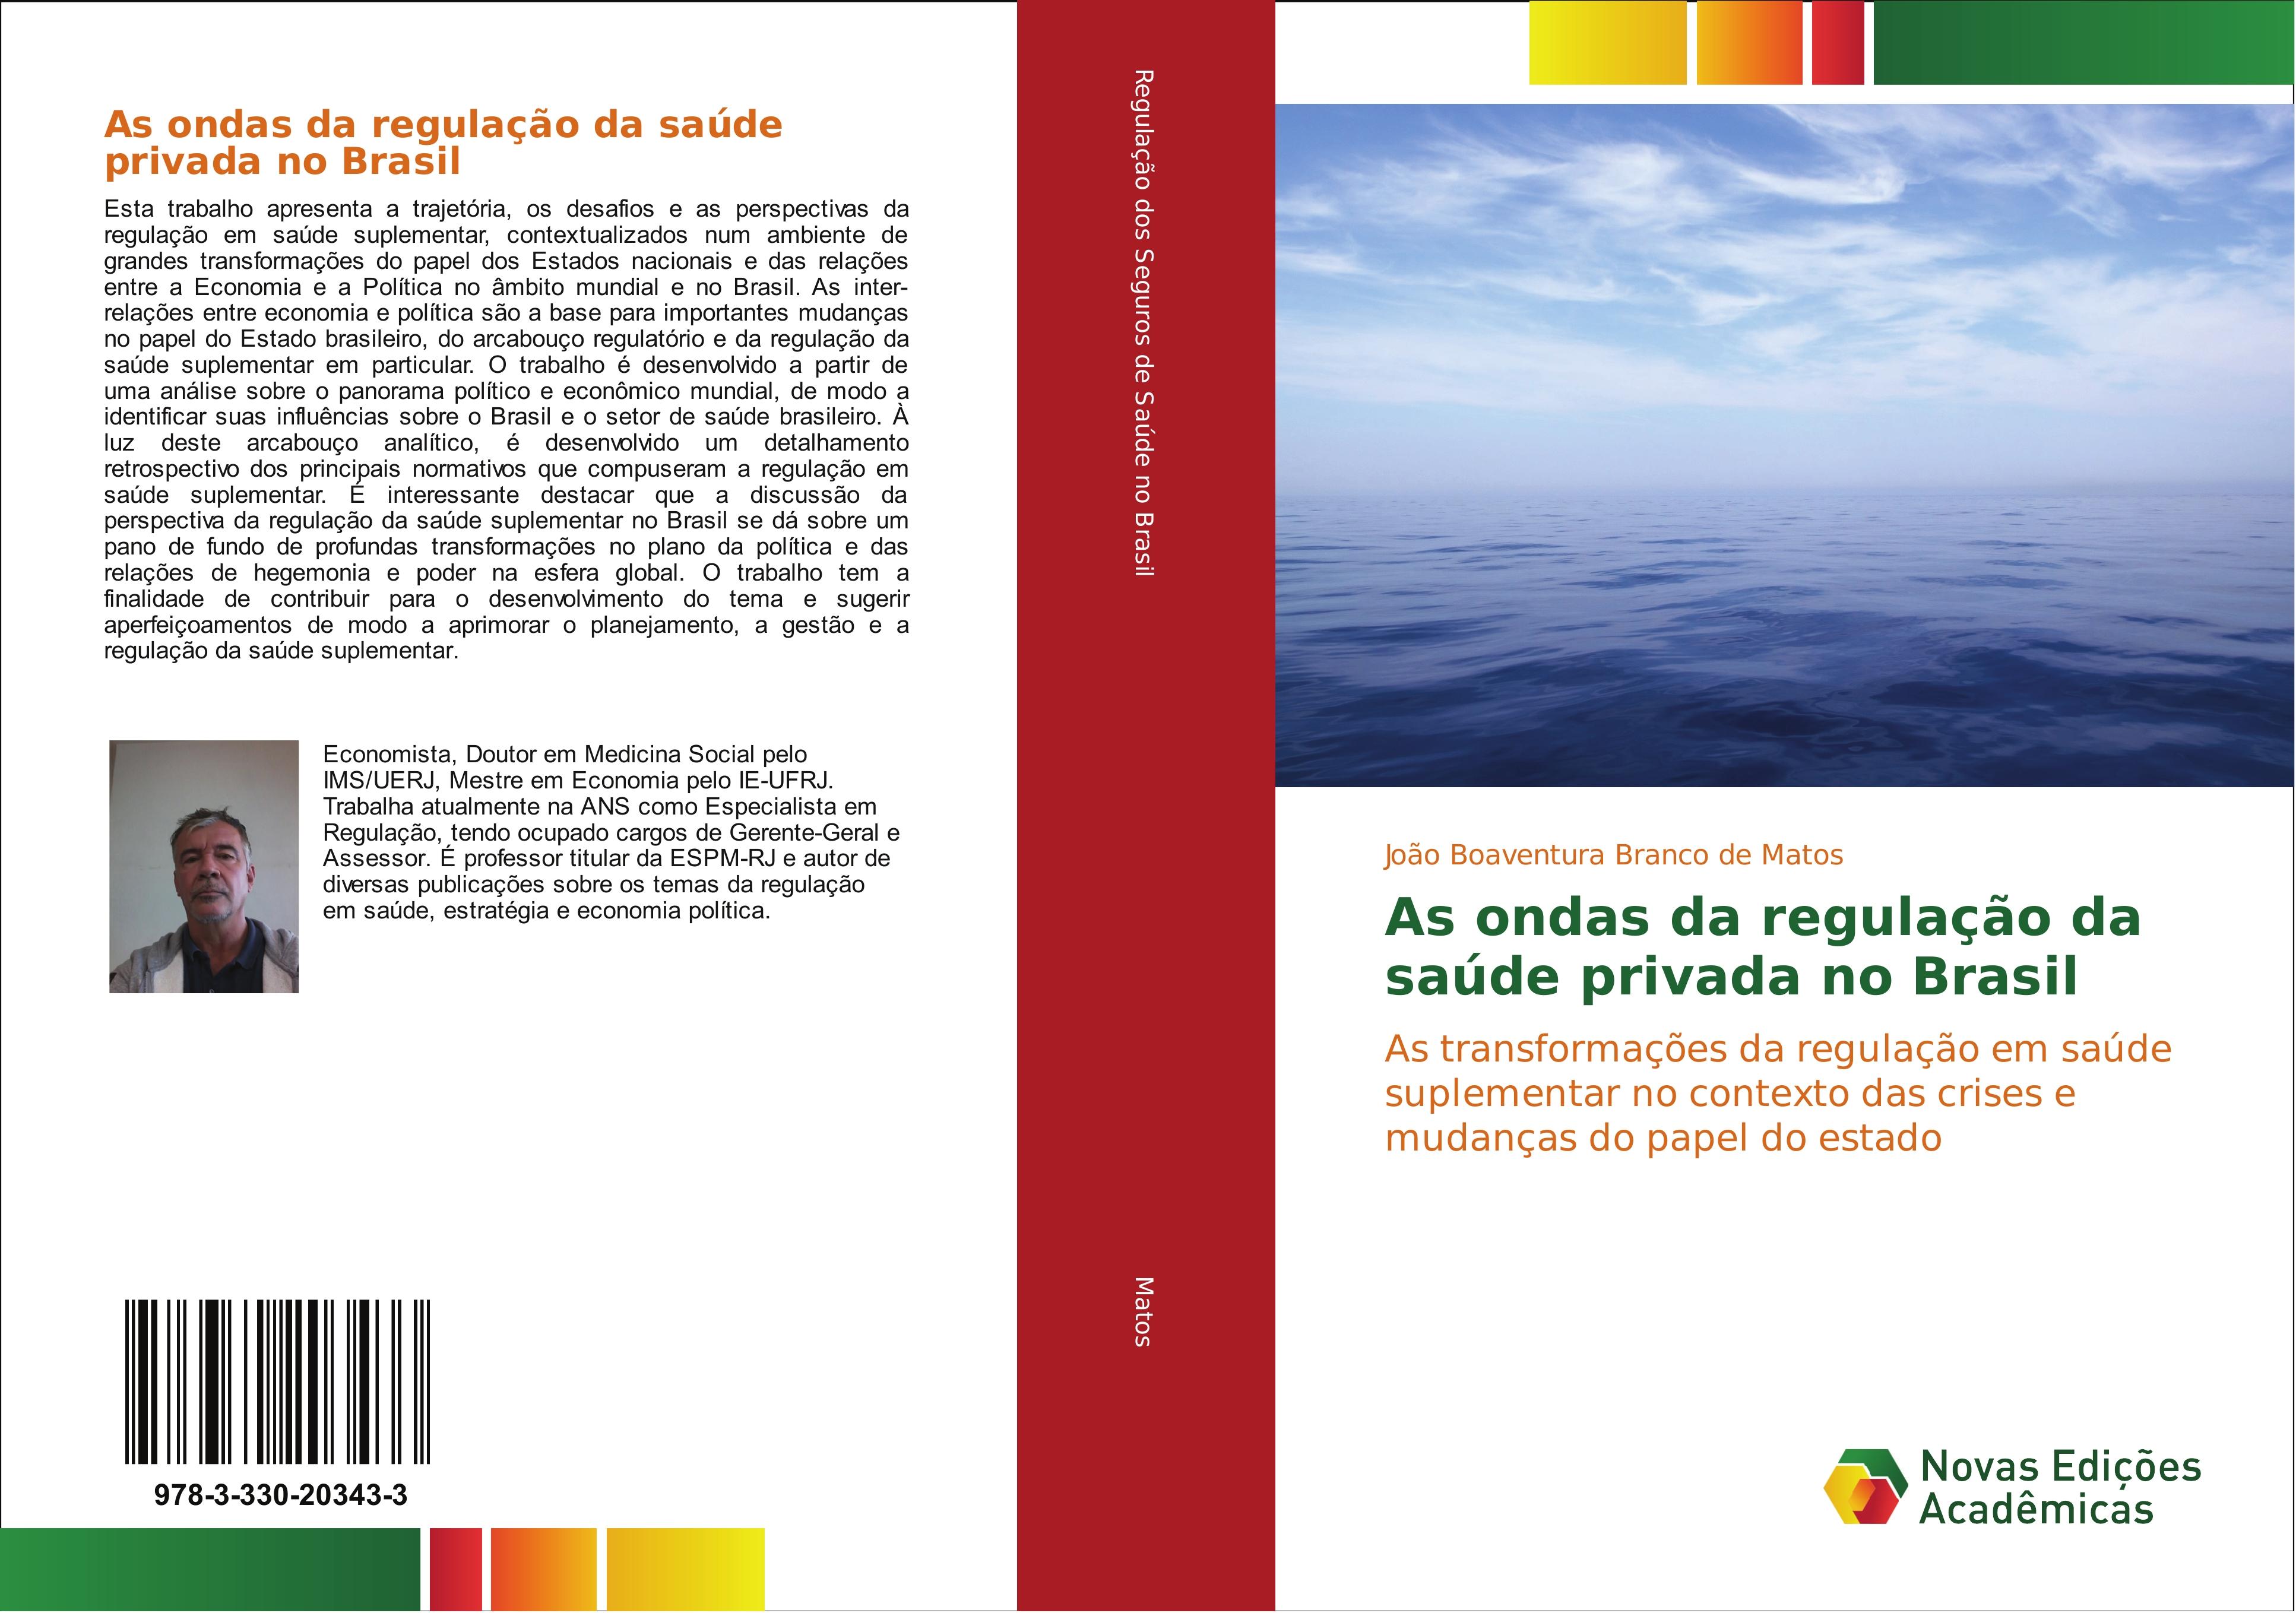 As ondas da regulação da saúde privada no Brasil - João Boaventura Branco de Matos